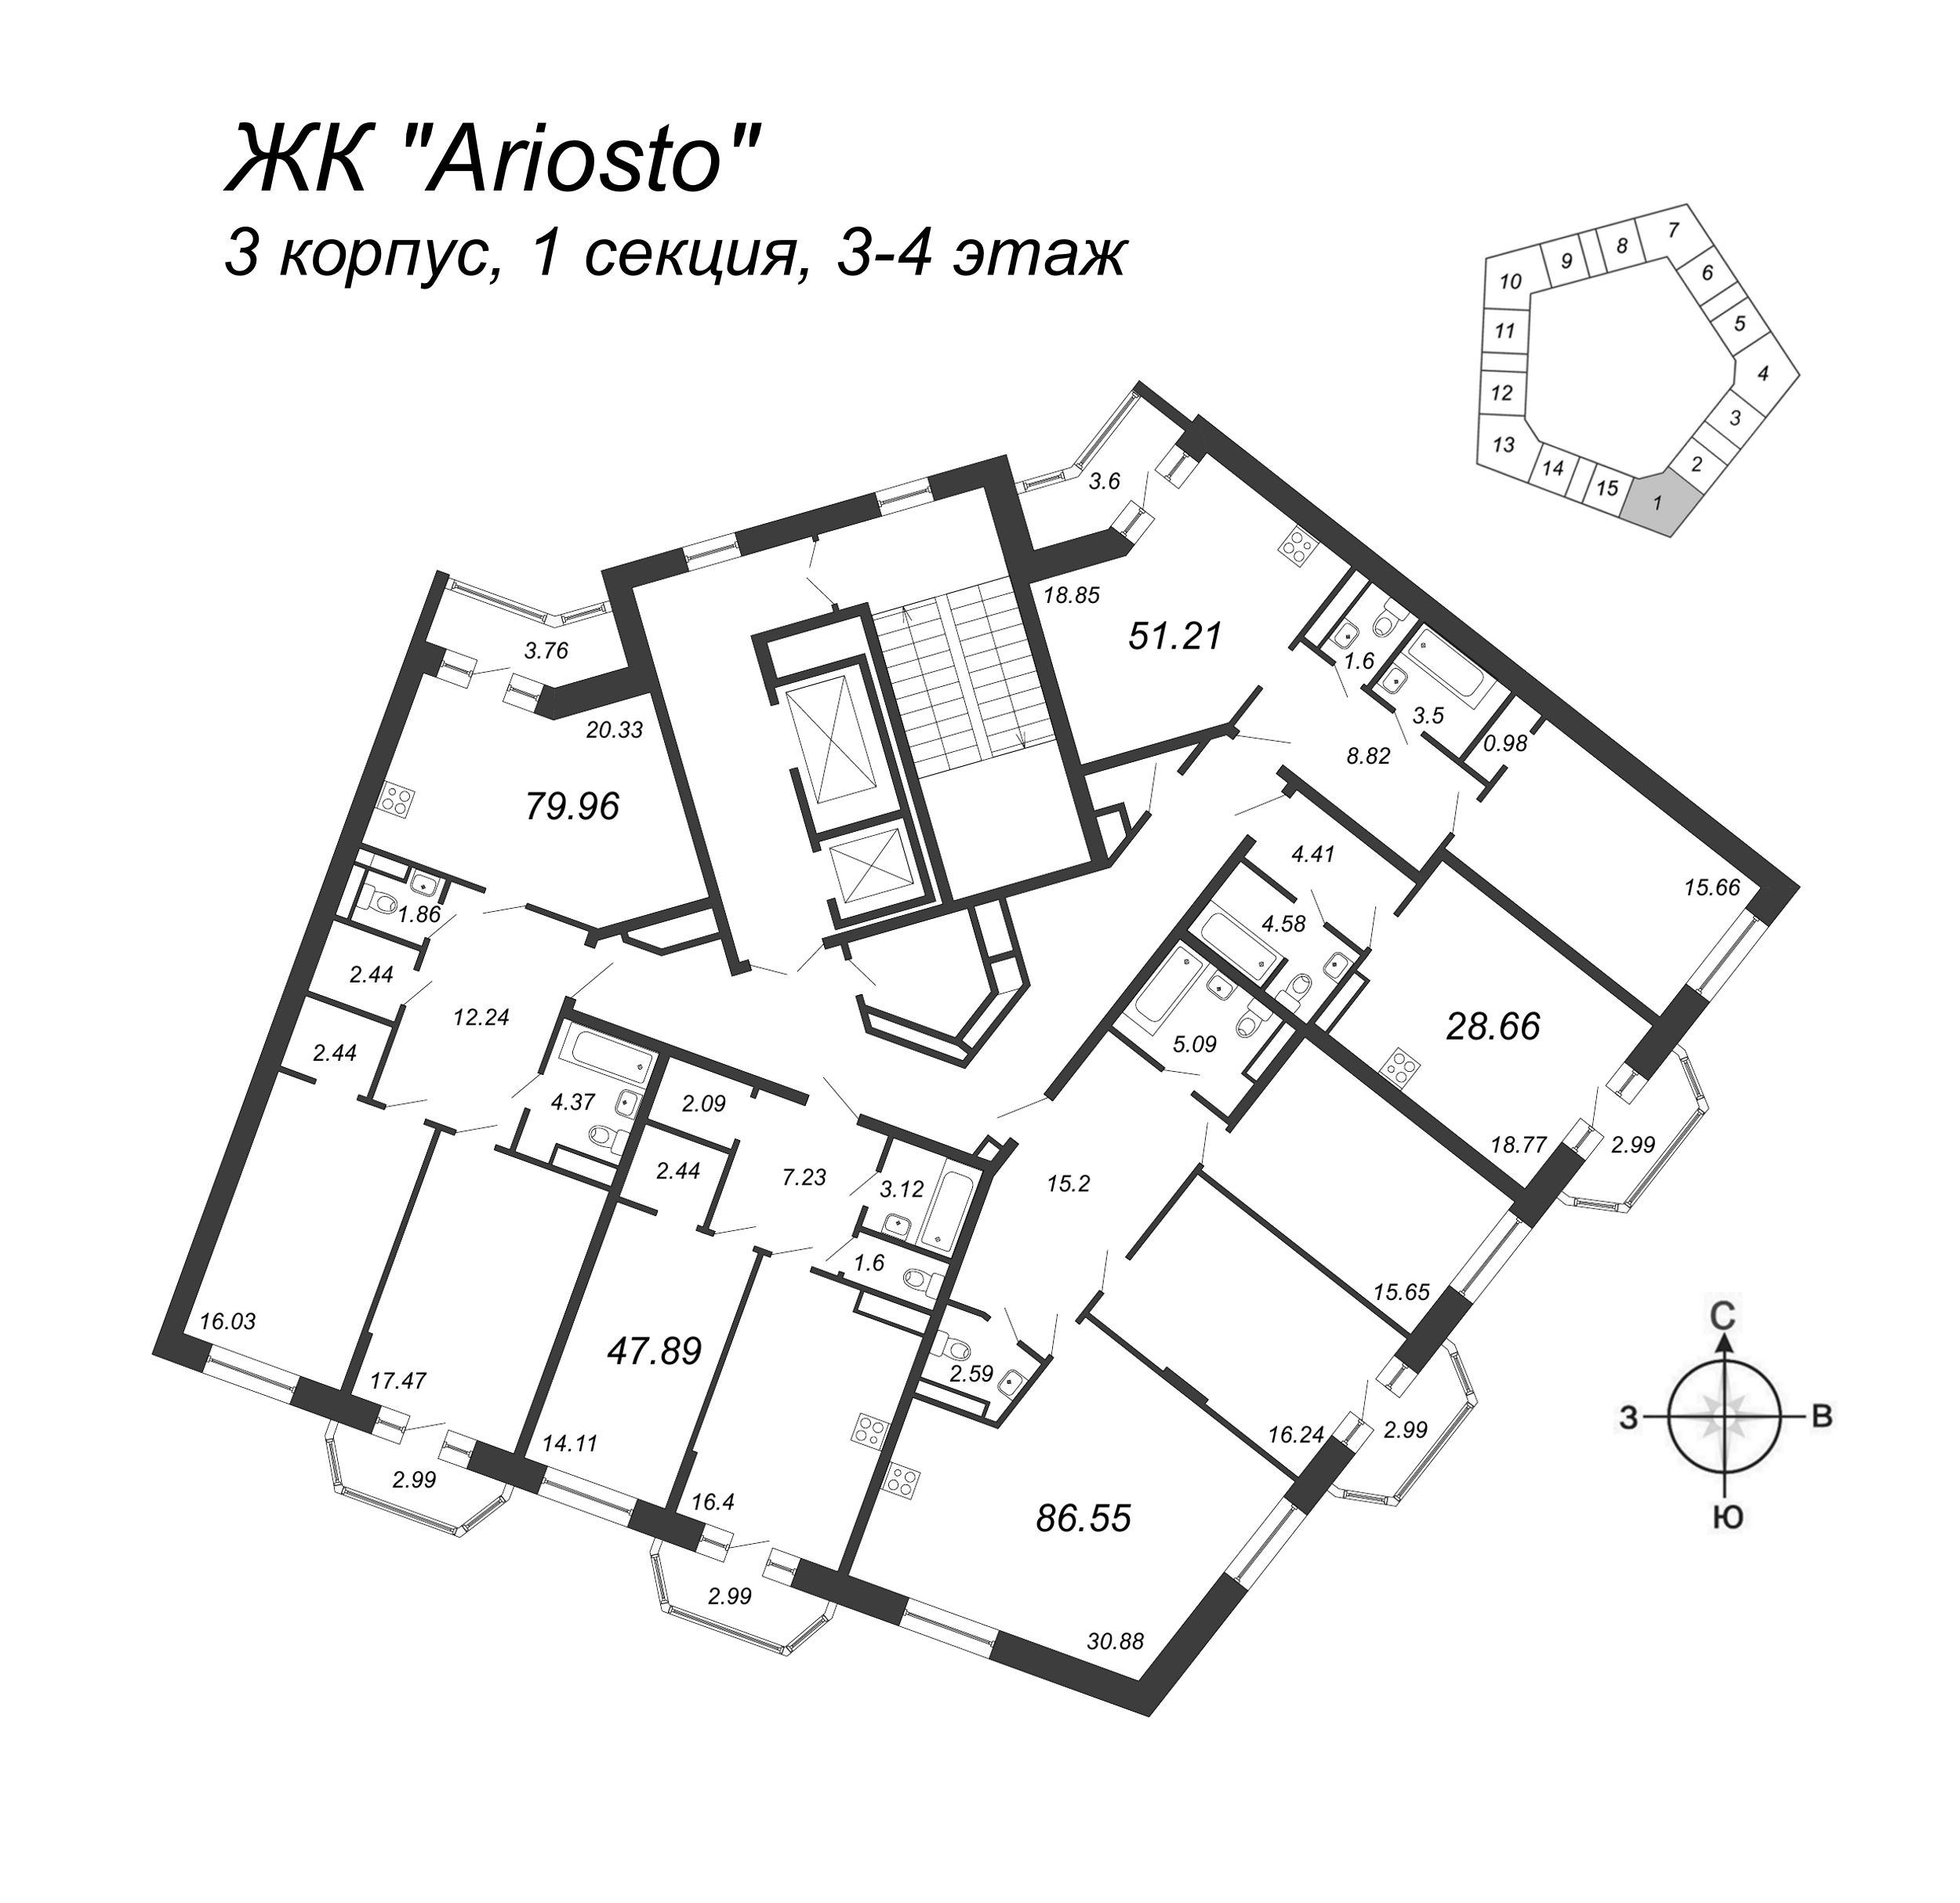 3-комнатная (Евро) квартира, 79.96 м² в ЖК "Ariosto" - планировка этажа